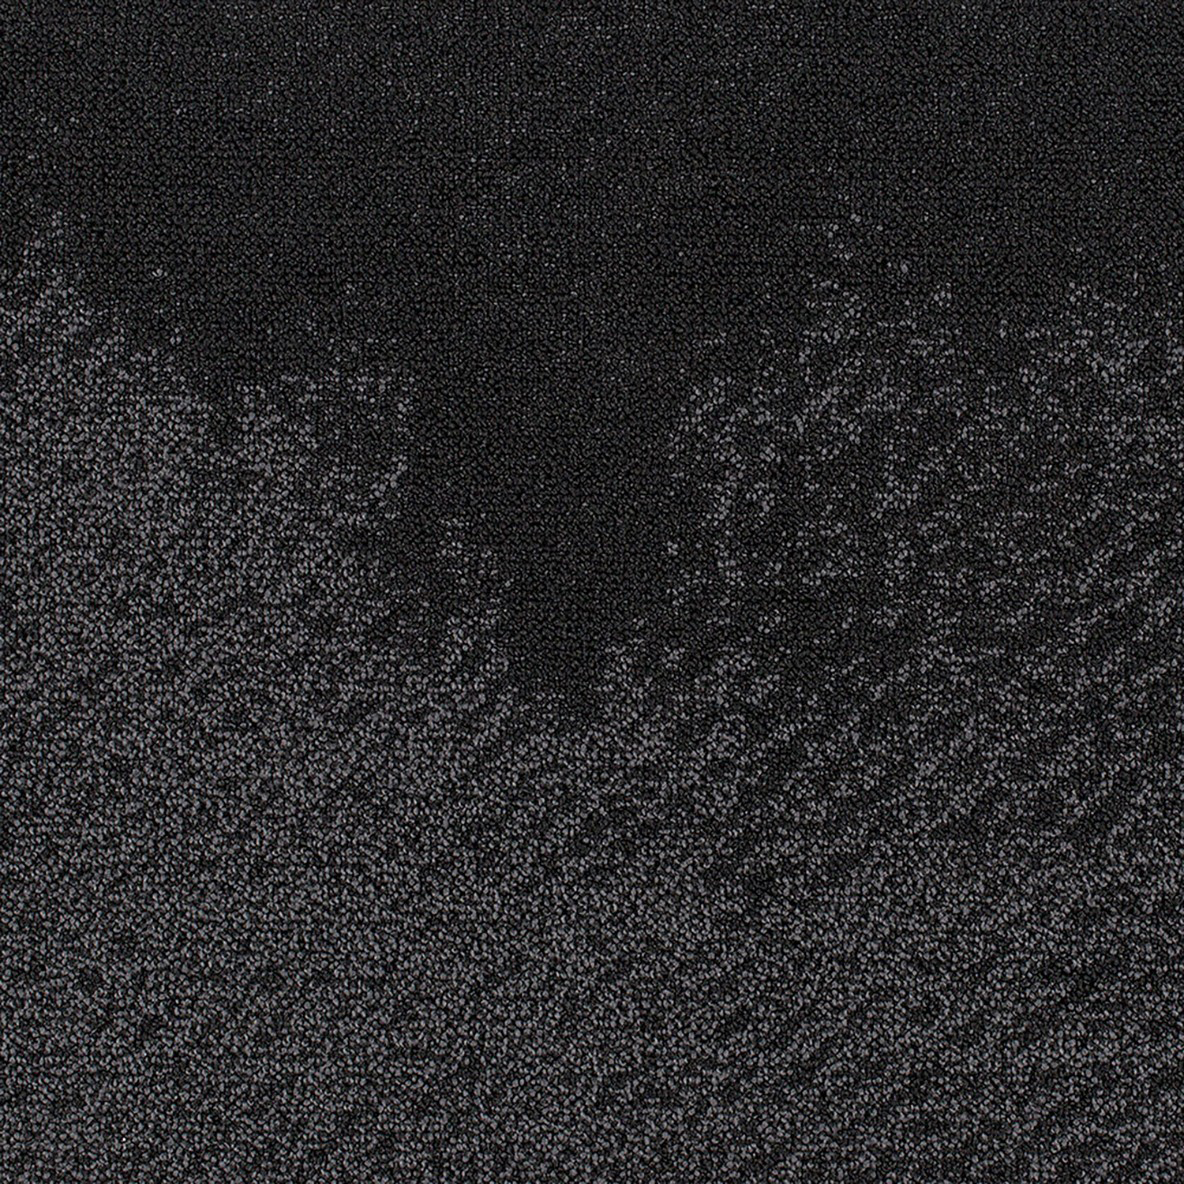 Burnished Commercial Carpet Tile .325 Inch x 50x50 cm Per Tile Noir color close up